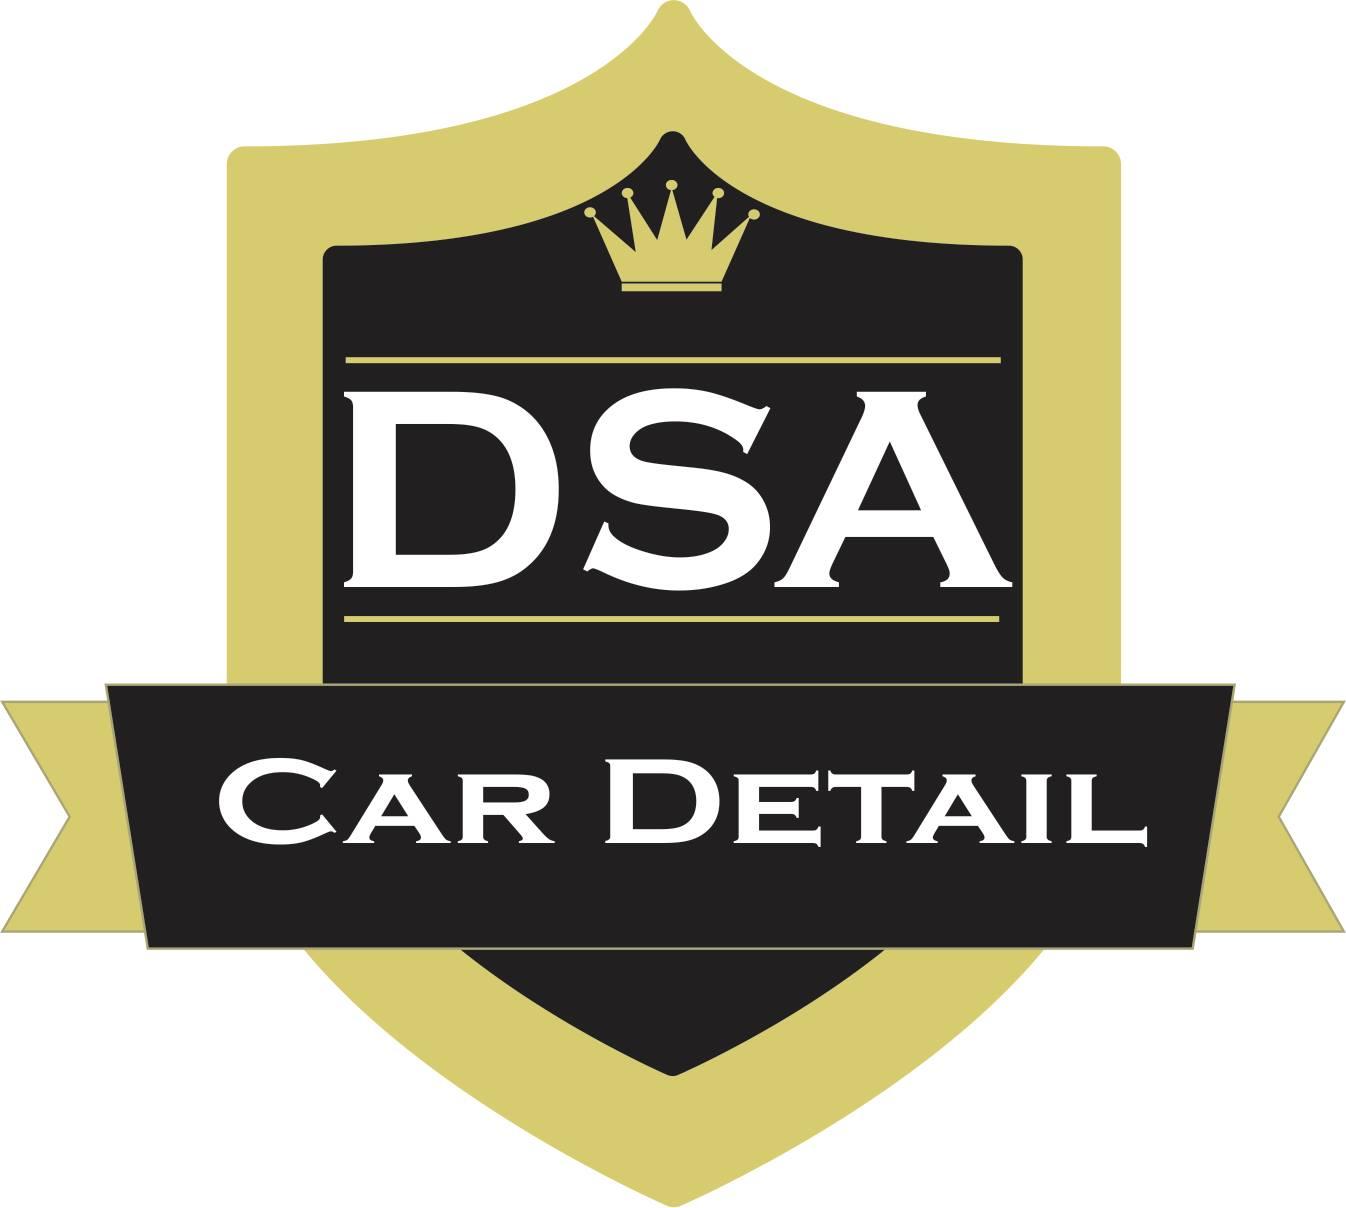 DSA Car Detail - Estética Automotiva